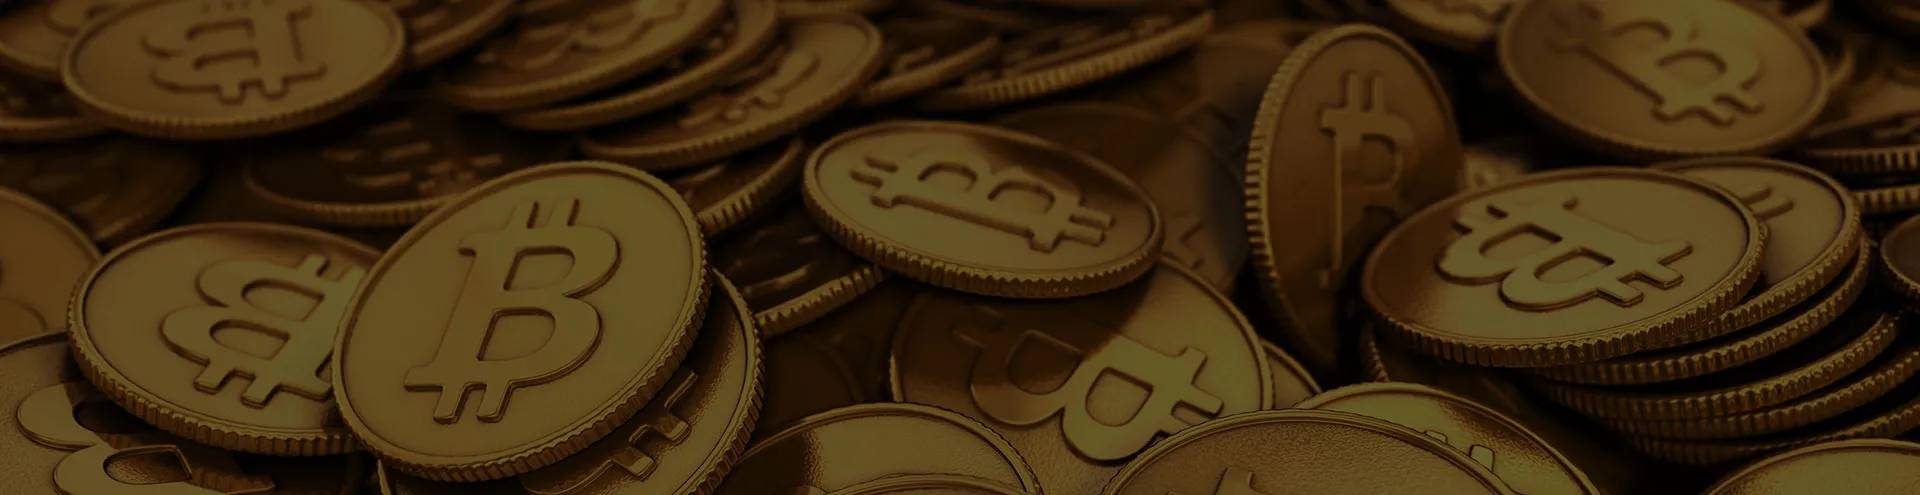 Bitcoin Code - Mi a különbség a Bitcoin és a Bitcoin Cash között?